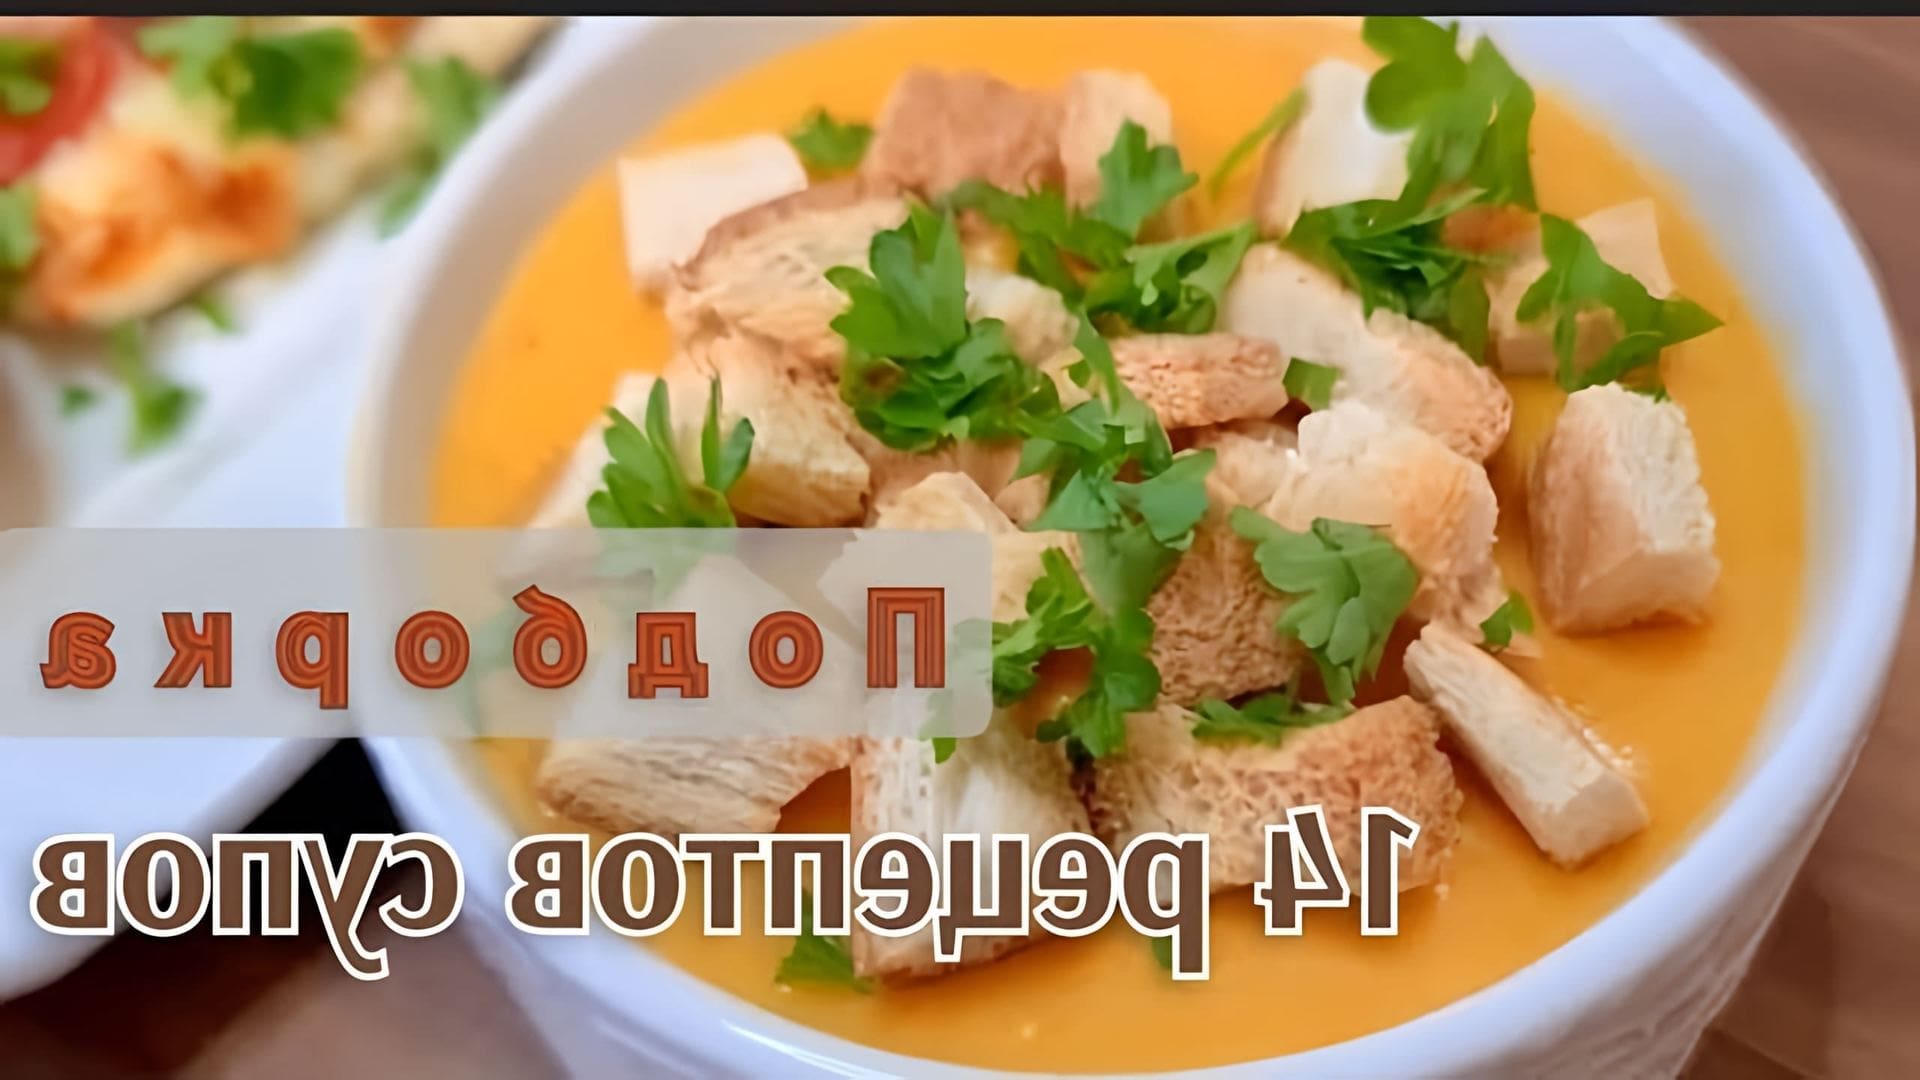 Видео рецепты 14 различных супов, которые легко, быстро и доступно готовить